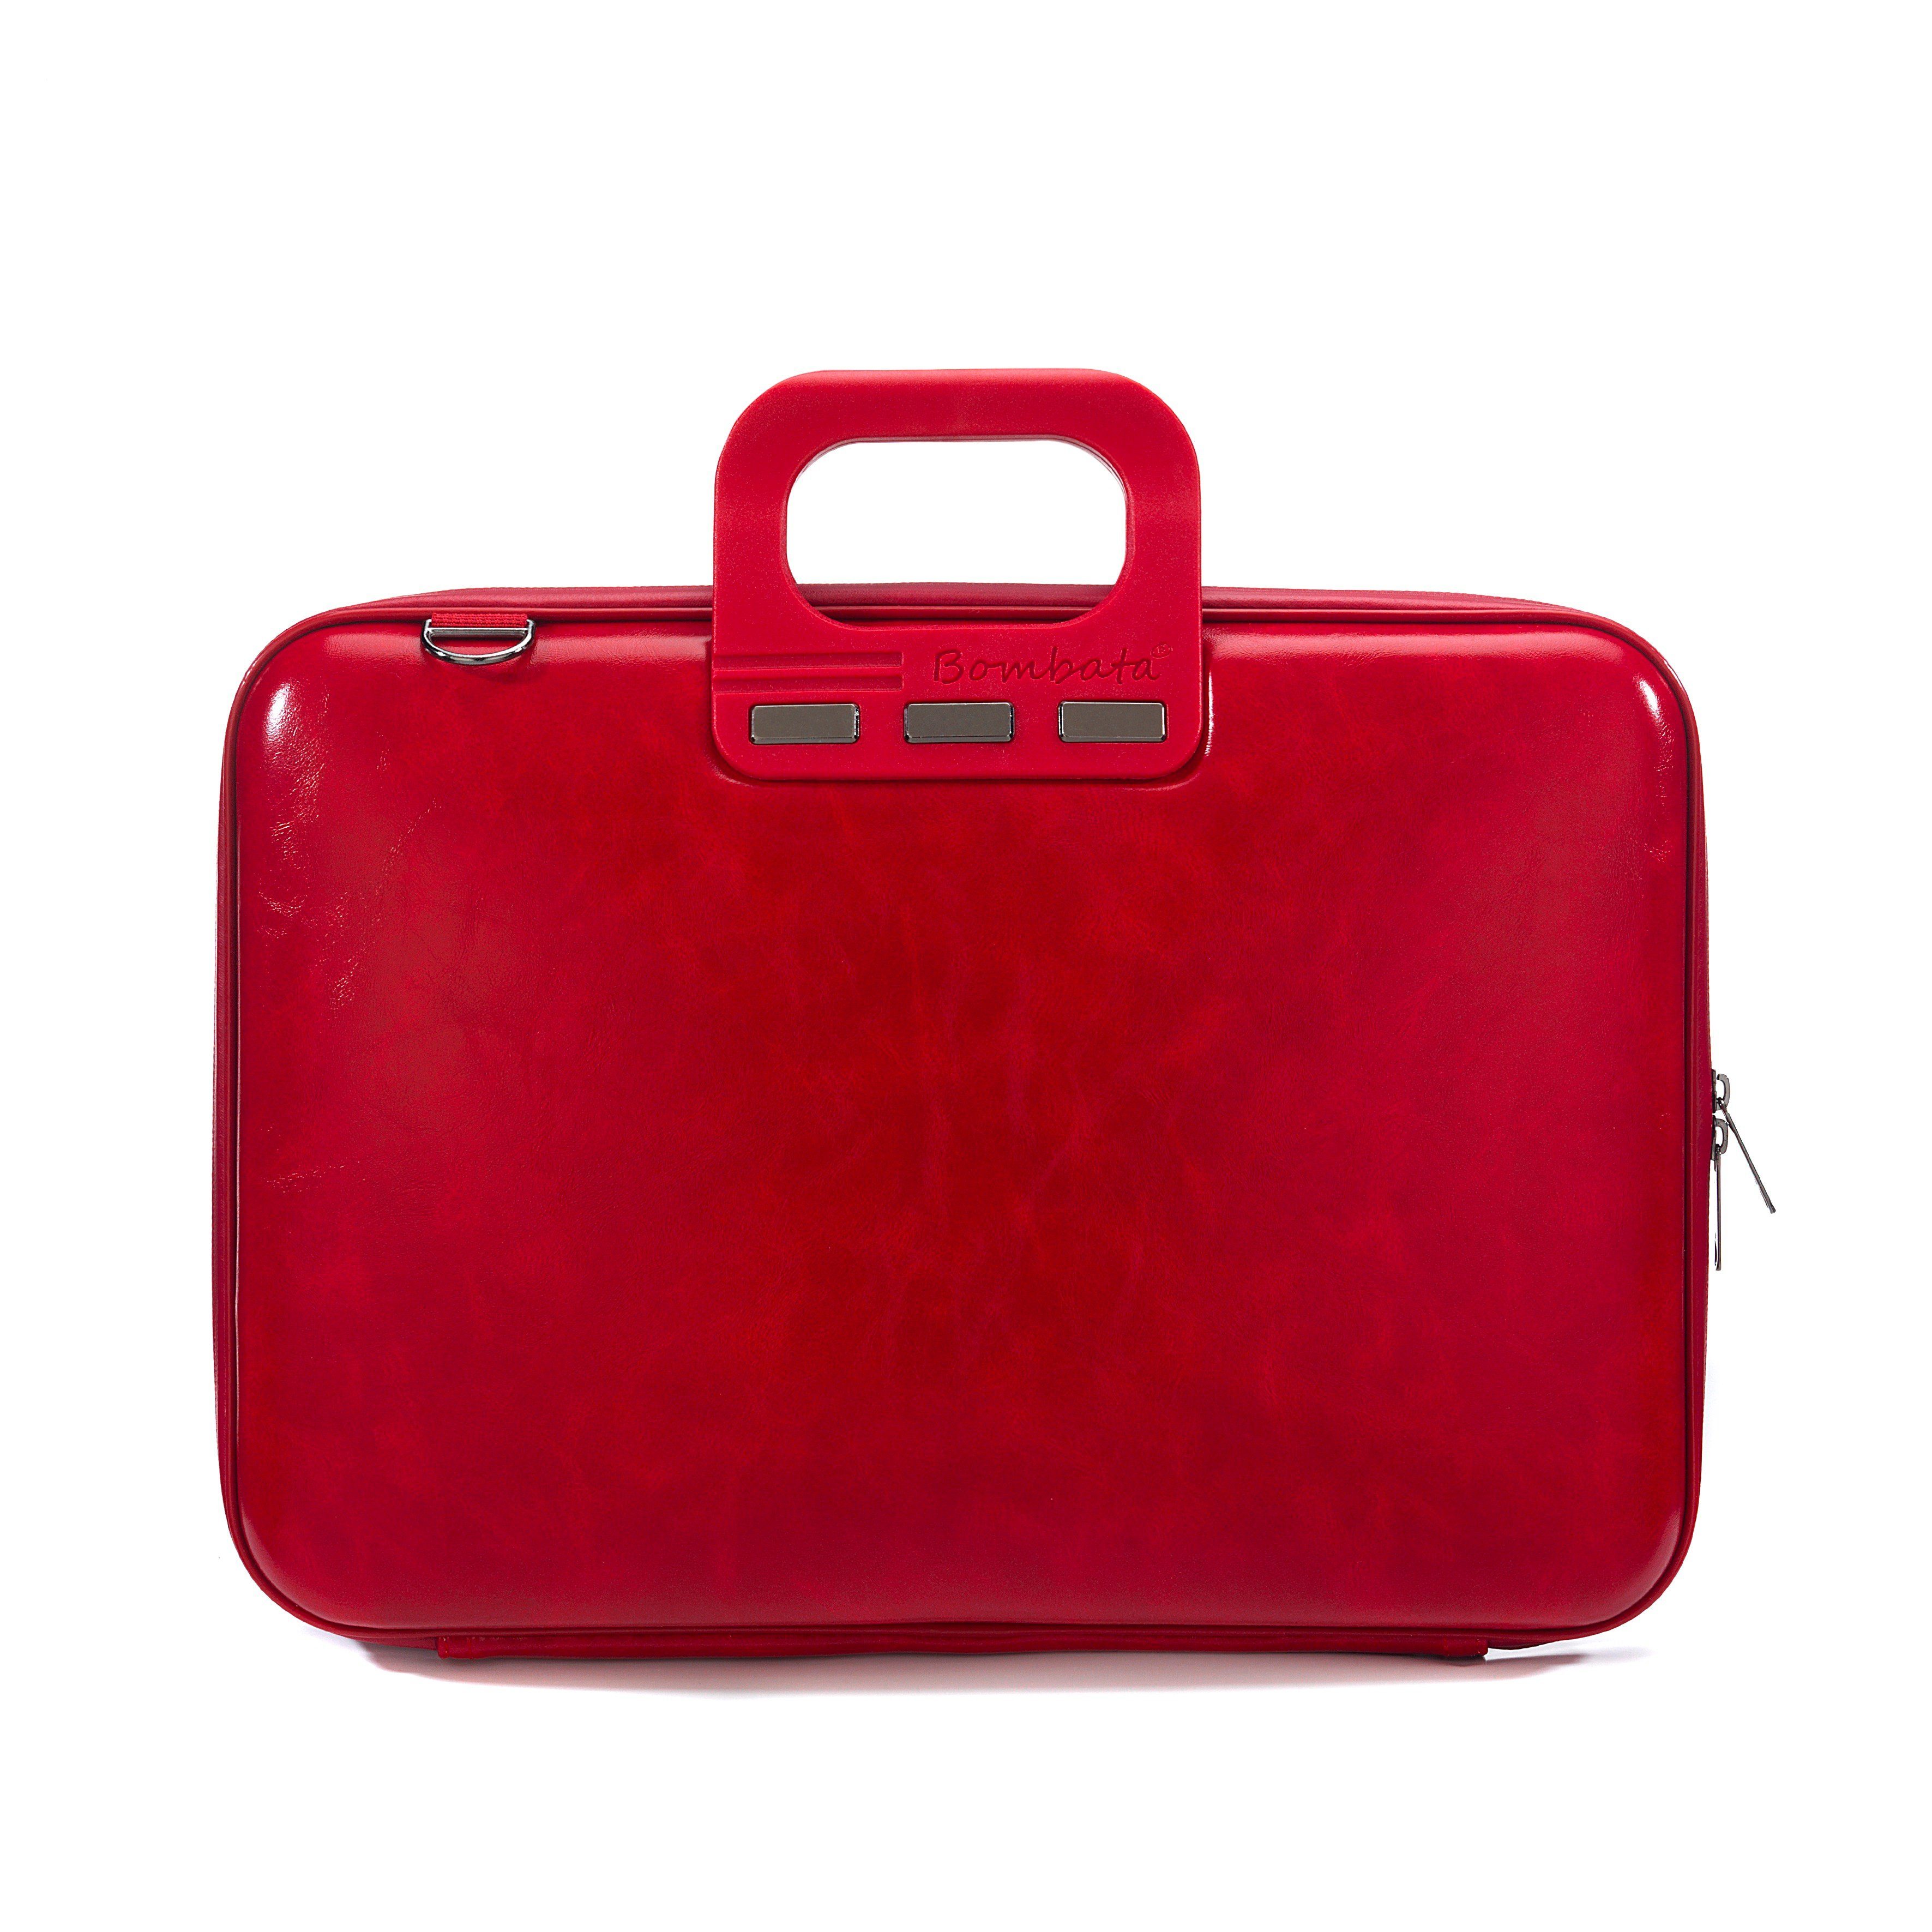 Laptoptasche in rot online kaufen | OTTO